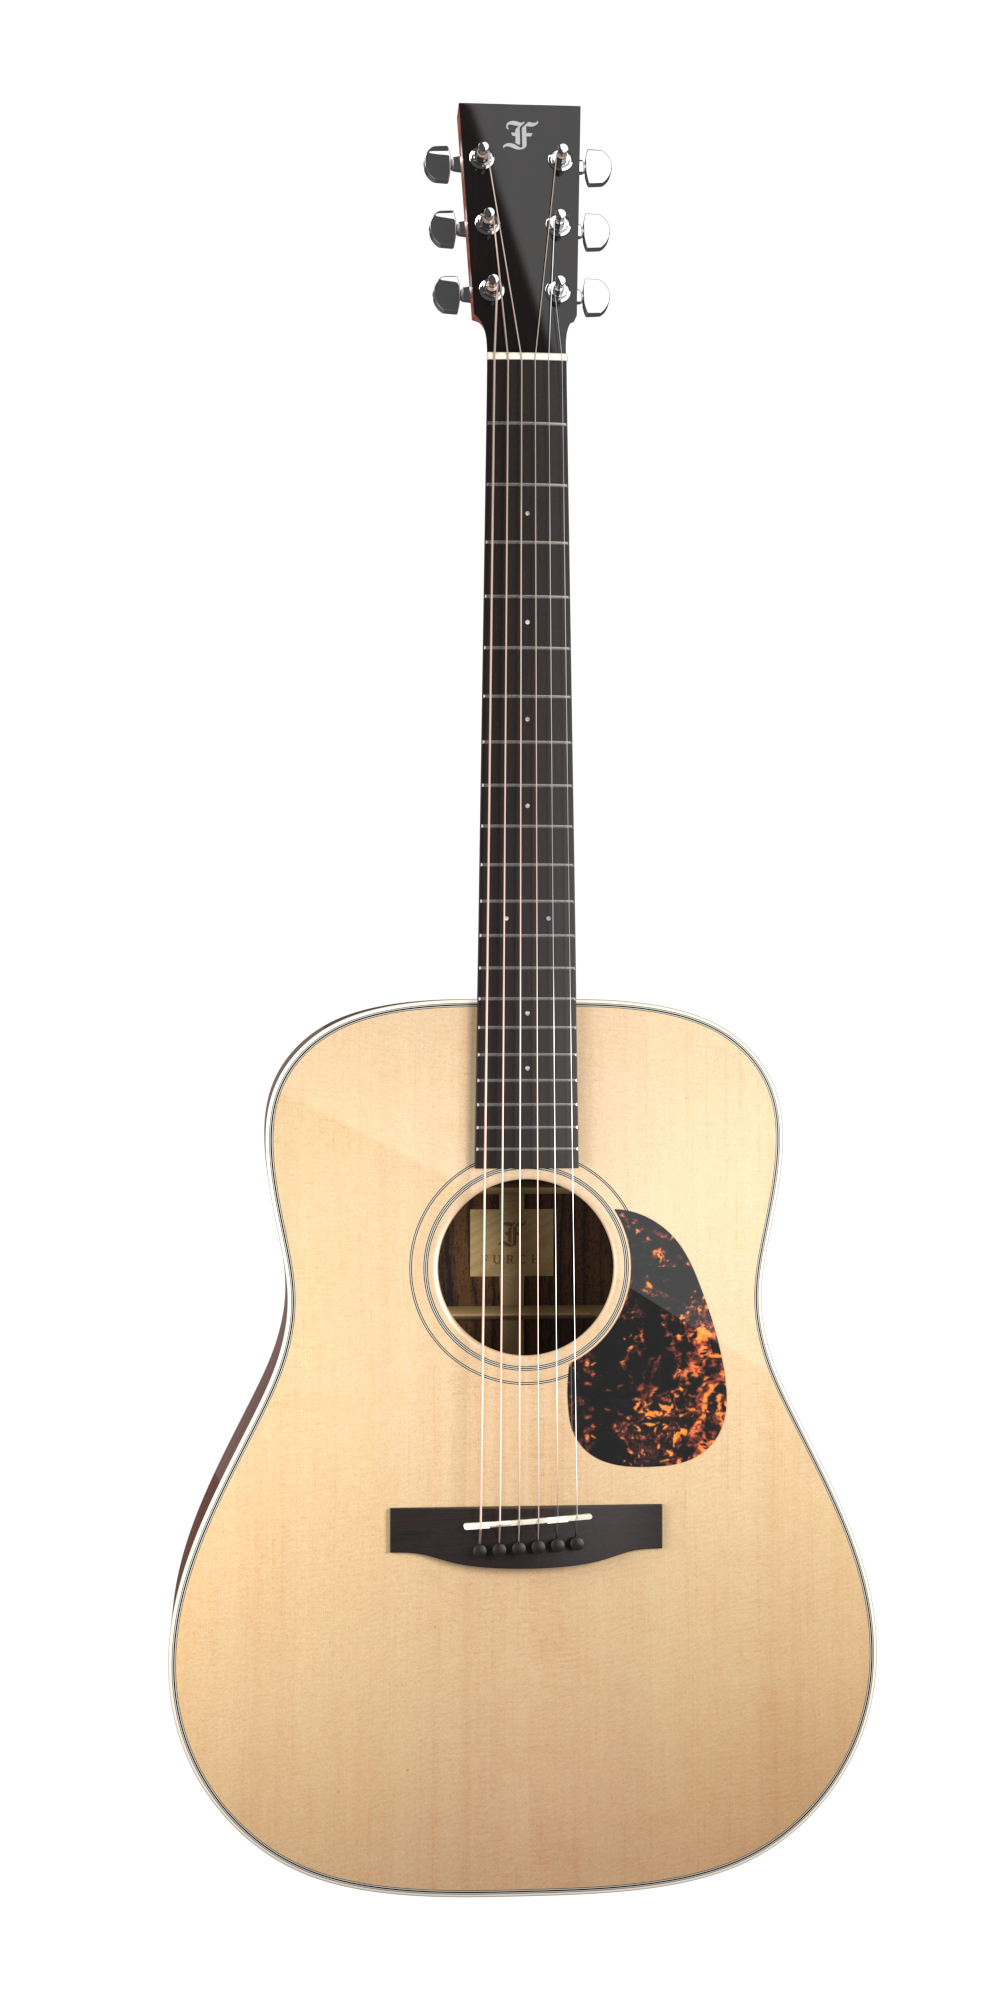 Køb Furch Vintage 1 D-SR - Western guitar med L.R.Baggs EAS/VTC Pickup og Hiscox hardcase - Pris 18495.00 kr.